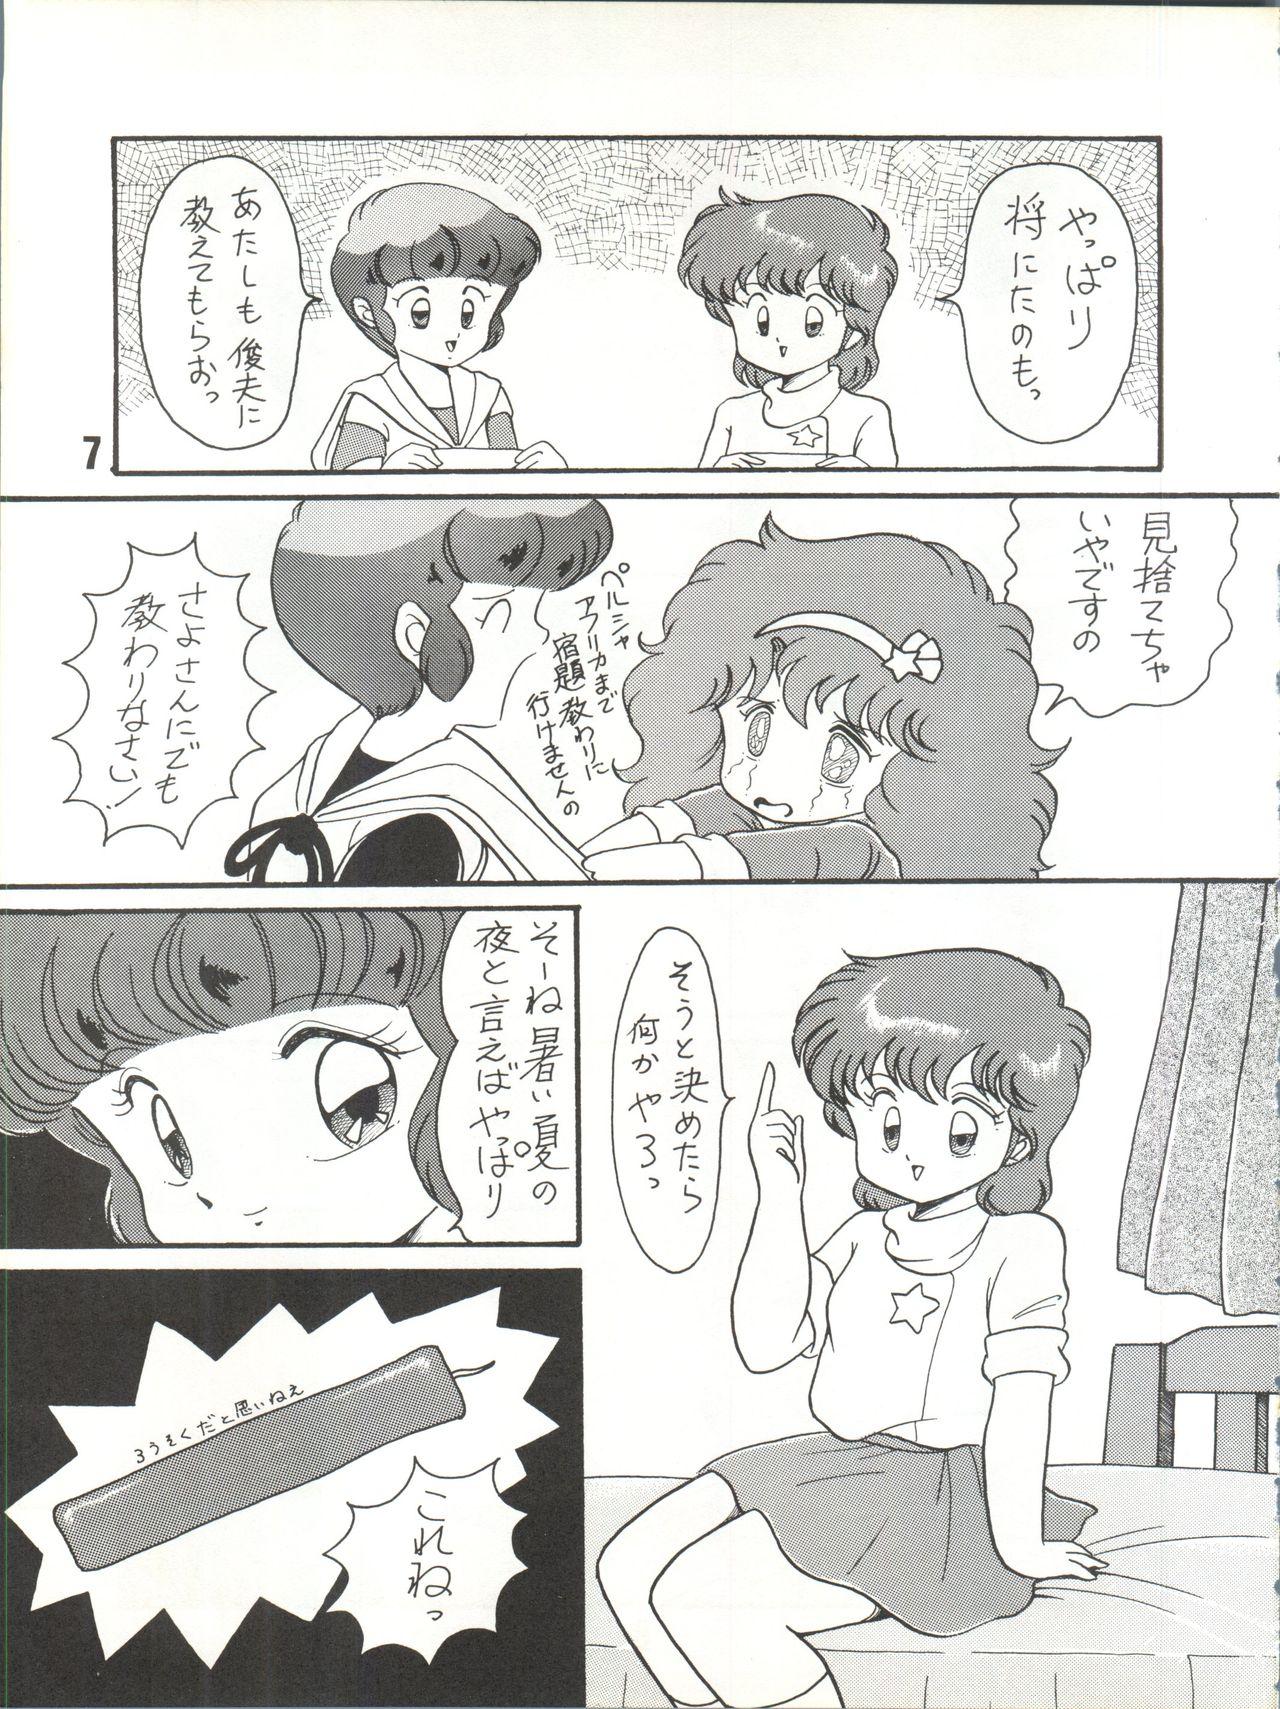 Tributo Magical Ponponpon 7 - Magical emi Creamy mami Mahou no yousei persia Idol densetsu eriko Idol tenshi youkoso yoko Aunt - Page 8